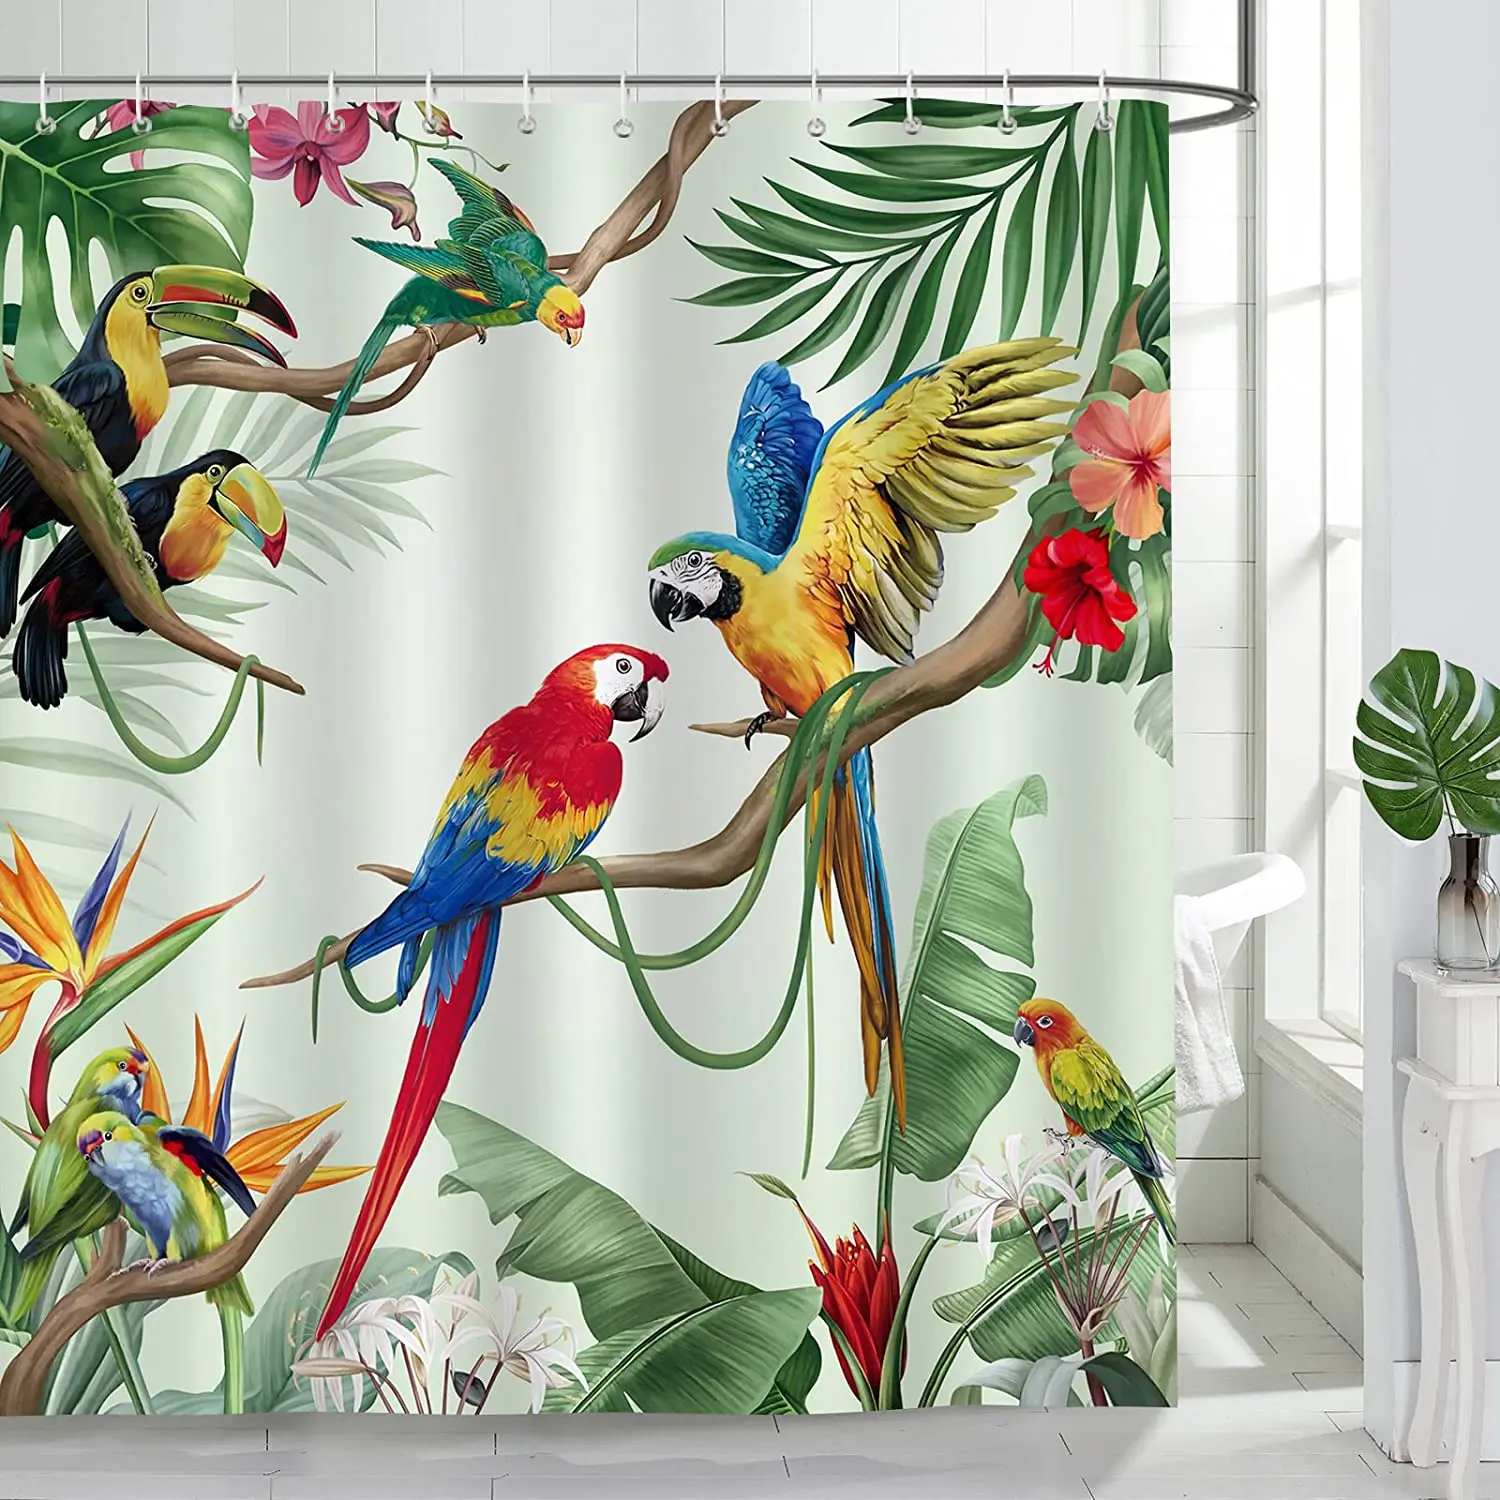 

Тропические птицы, занавеска для душа для ванной, попугай, тукан, зеленые листья, растения, летние шторы для ванной из полиэстера, декоративные крючки